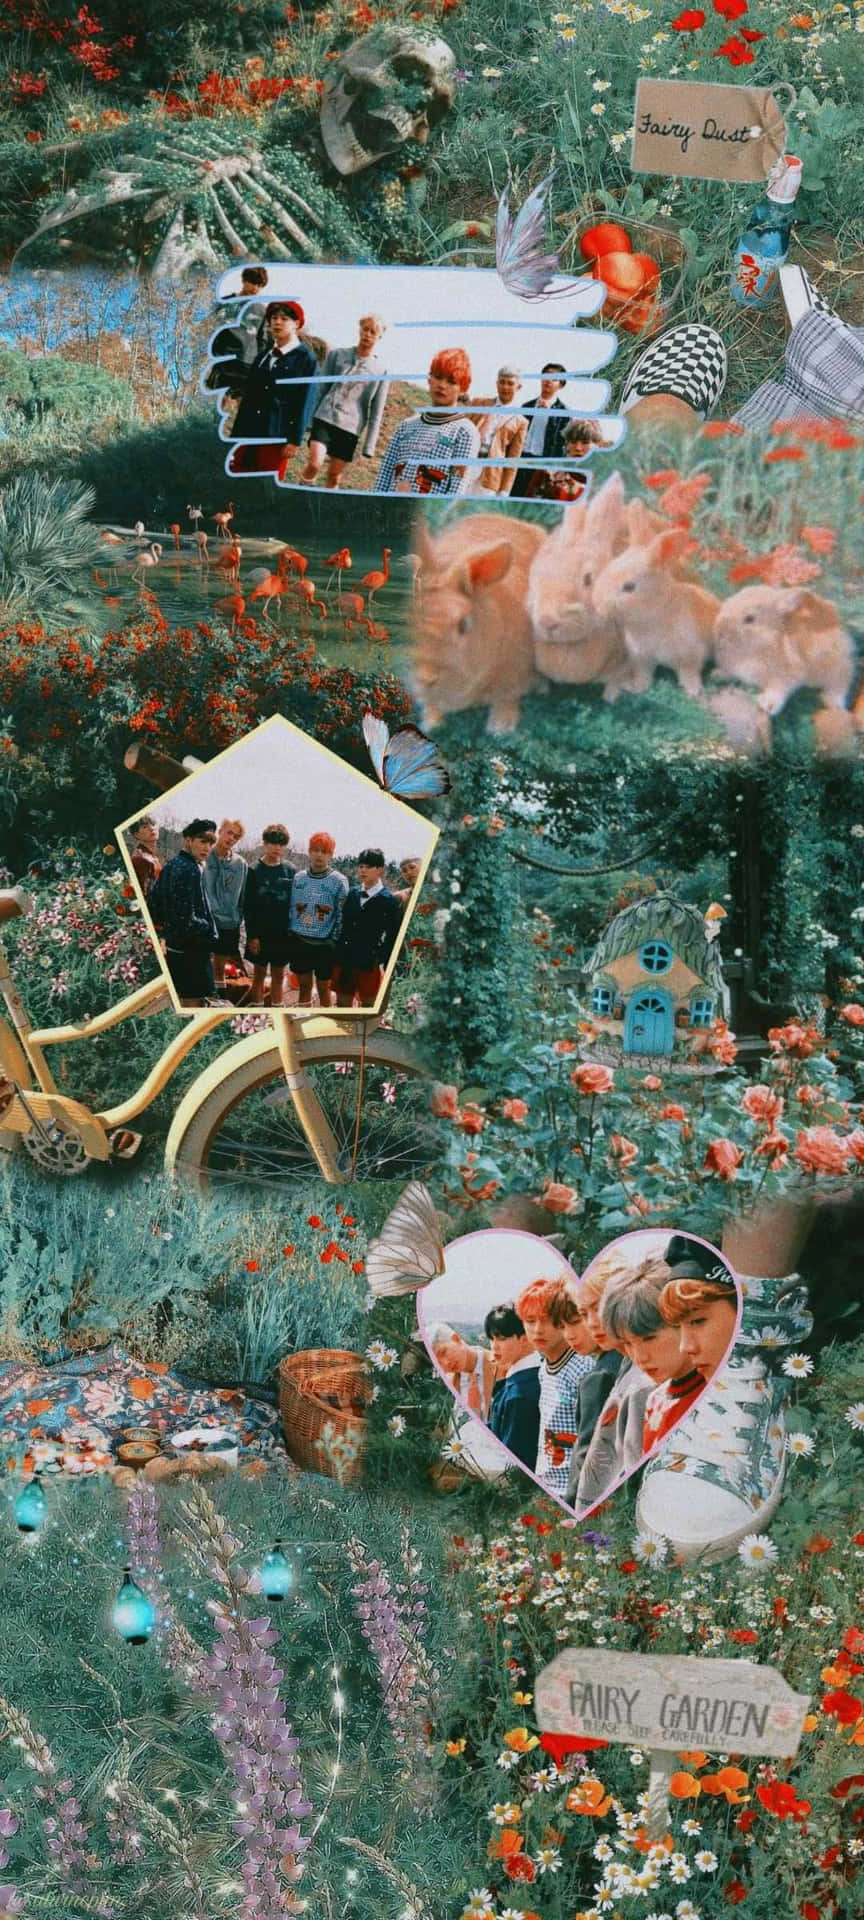 Kpop Bts Garden Fairycore Background